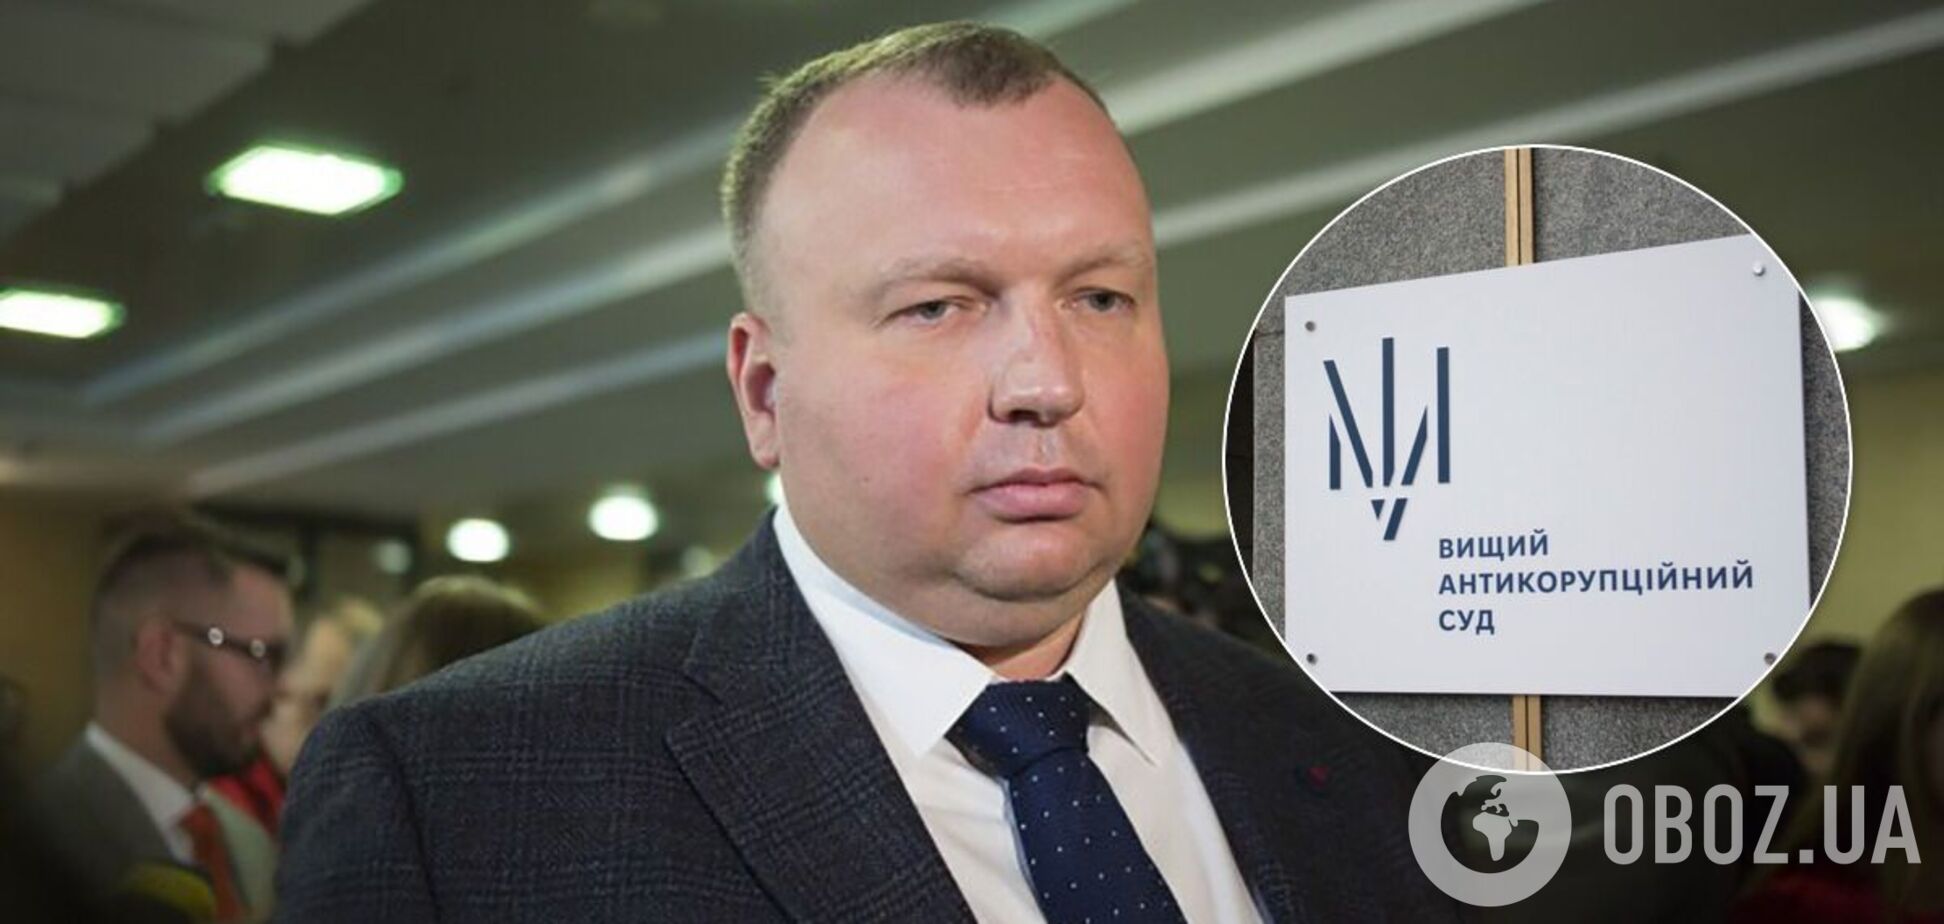 КСУ 'помог' закрыть уголовное производство против экс-главы 'Укроборонпрома'